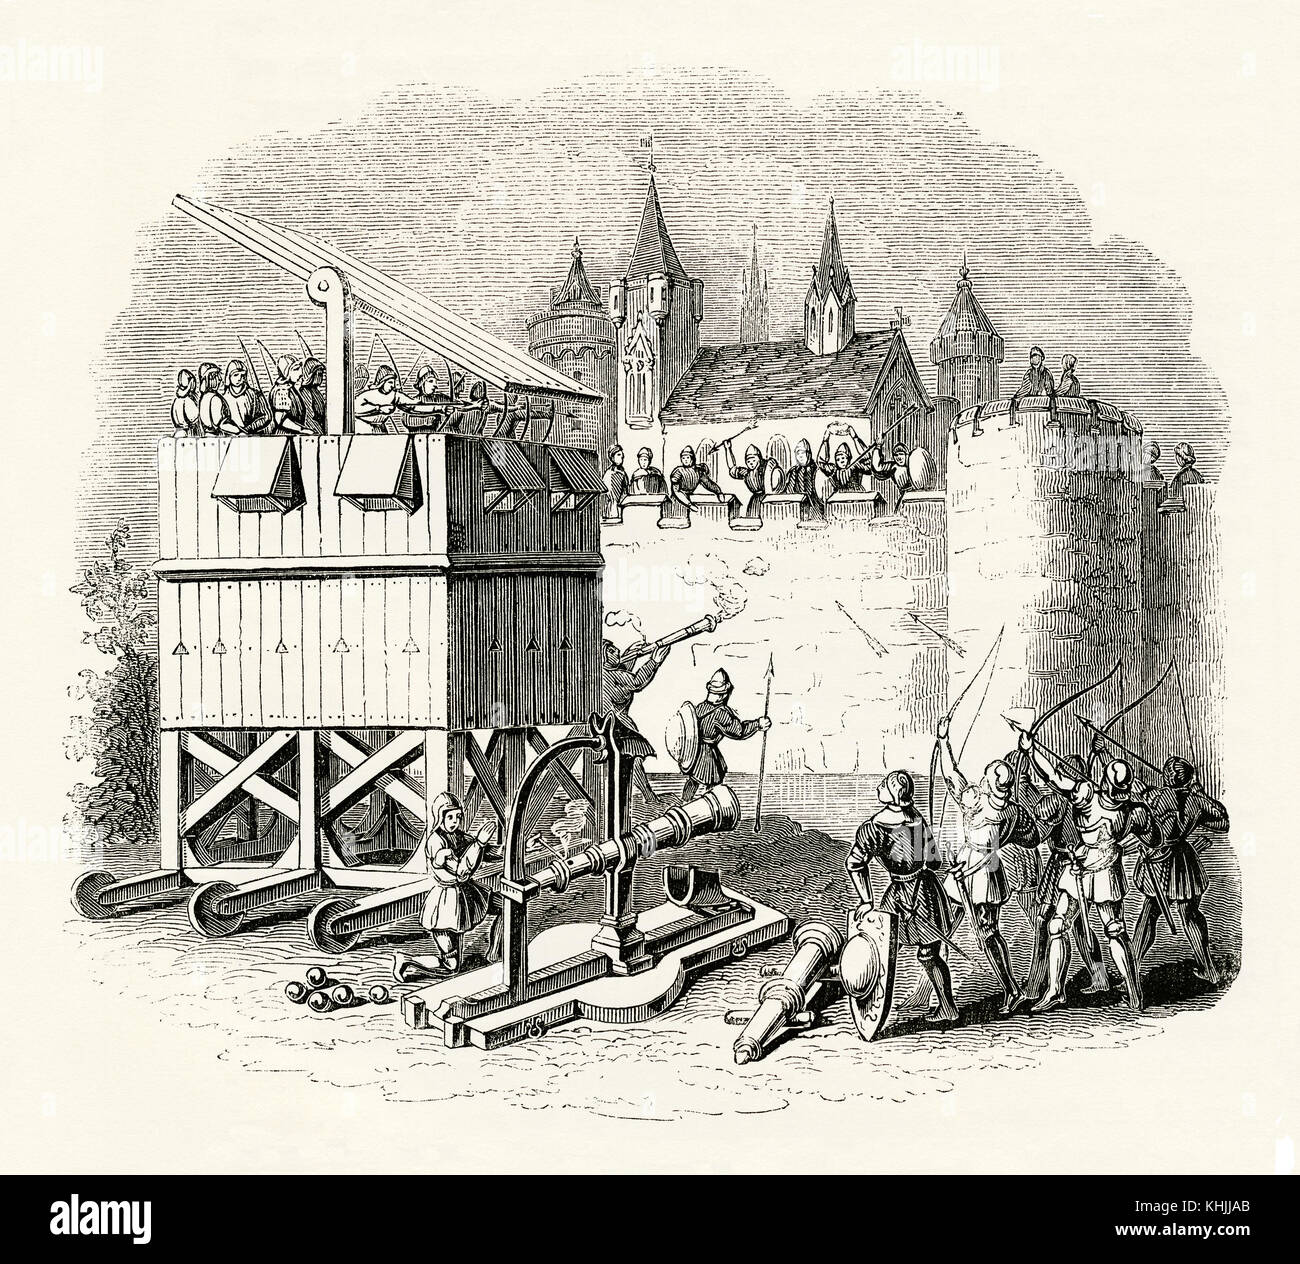 Ein alter Gravur, der die Schlachtszene aus dem Mittelalter darstellt - er zeigt Maschinen oder Geräte, die beim Angriff auf die Burgmauern verwendet wurden. Hier ist ein beweglicher Holzturm auf Rädern mit Bogenschützen auf der Spitze des Turms abgebildet. An der Basis befinden sich Bogenschützen mit Langbögen und eine große Kanone. Stockfoto